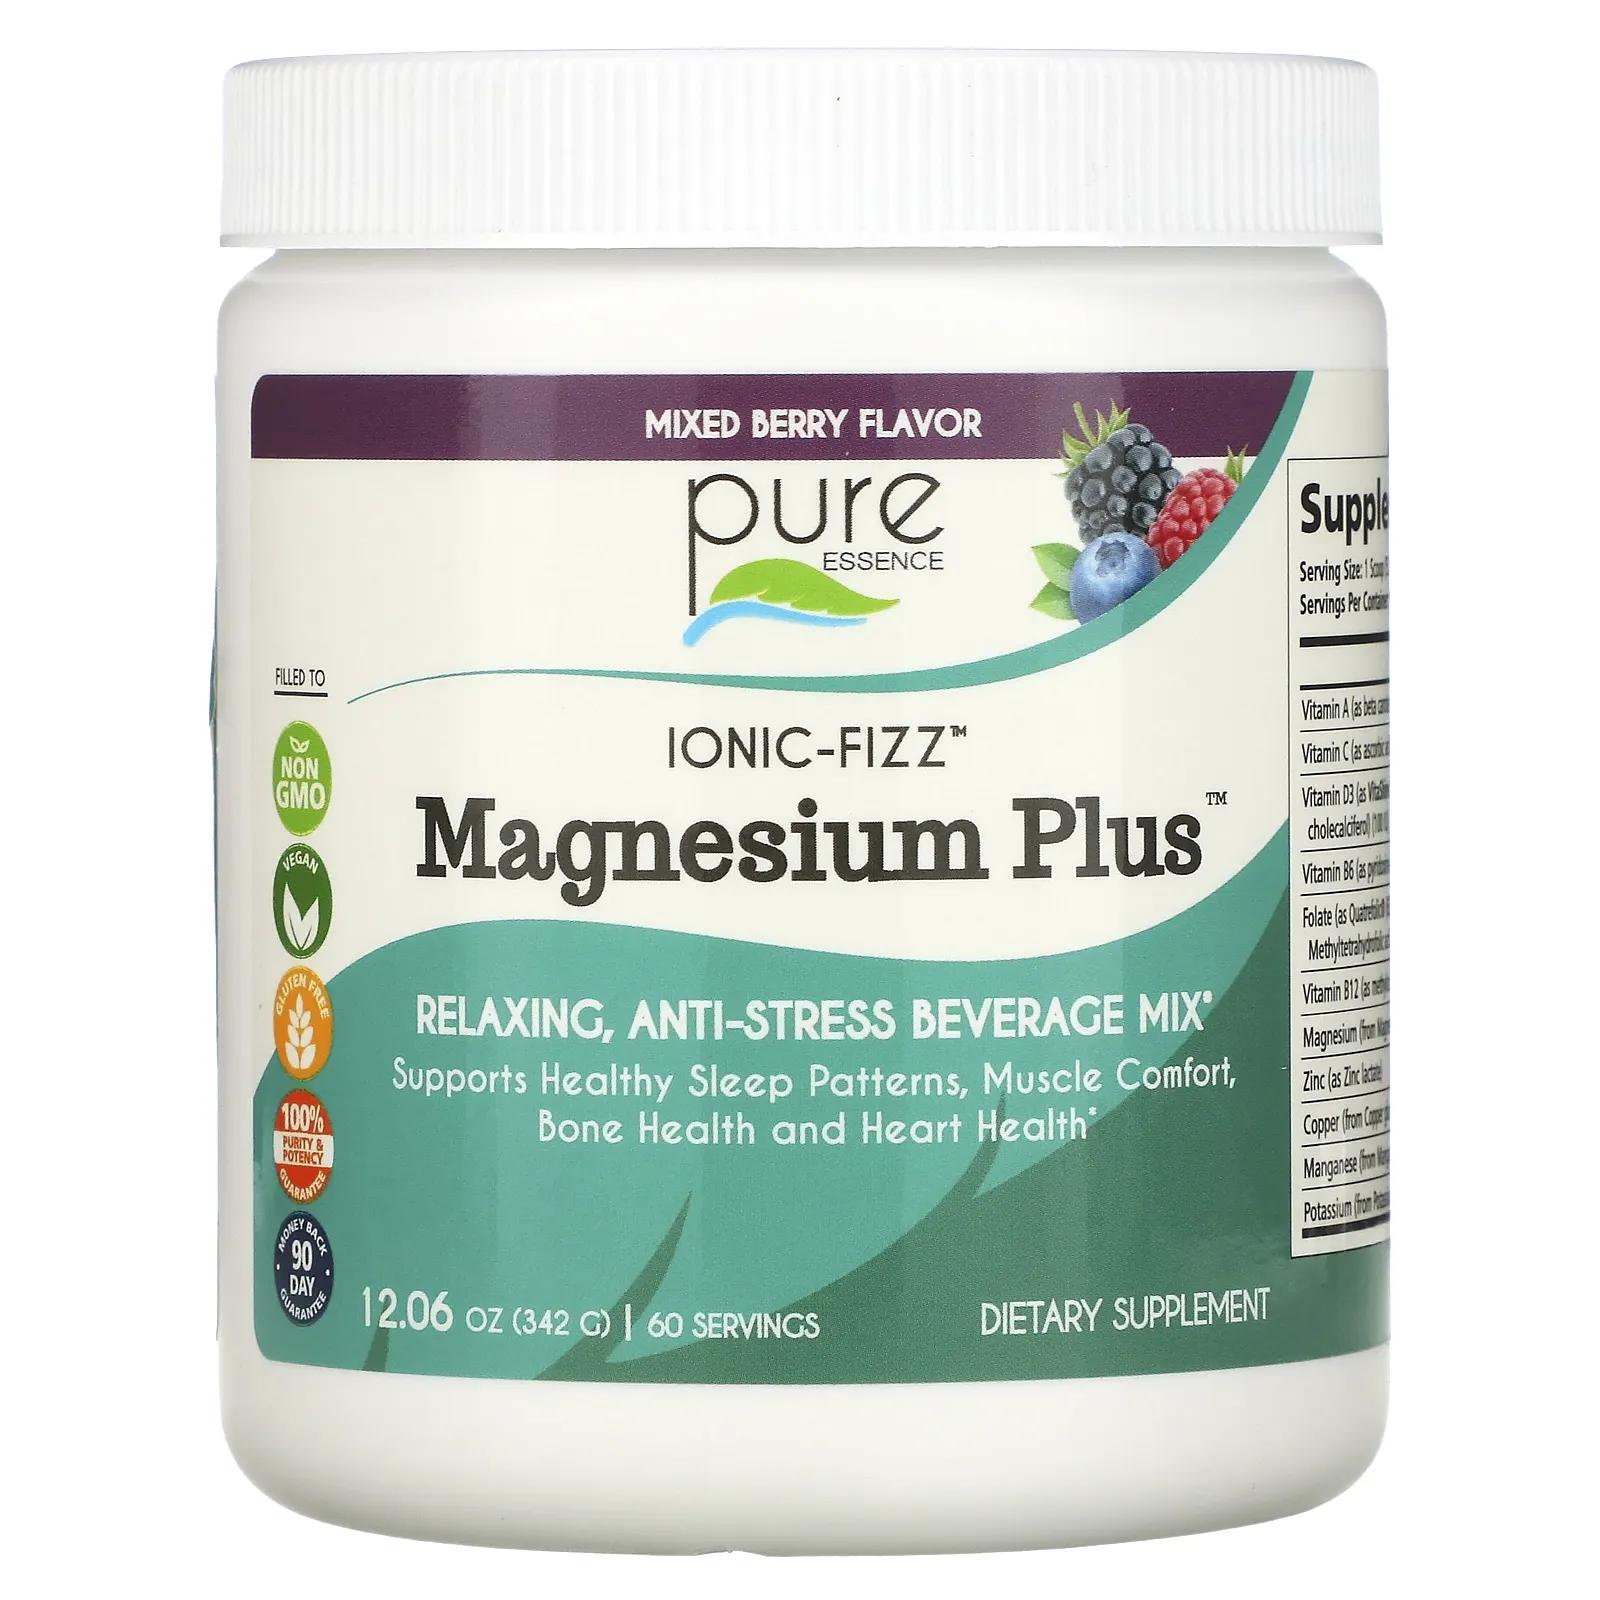 Pure Essence Ionic-Fizz Magnesium Plus ягодная смесь 12,06 унций (342 г)